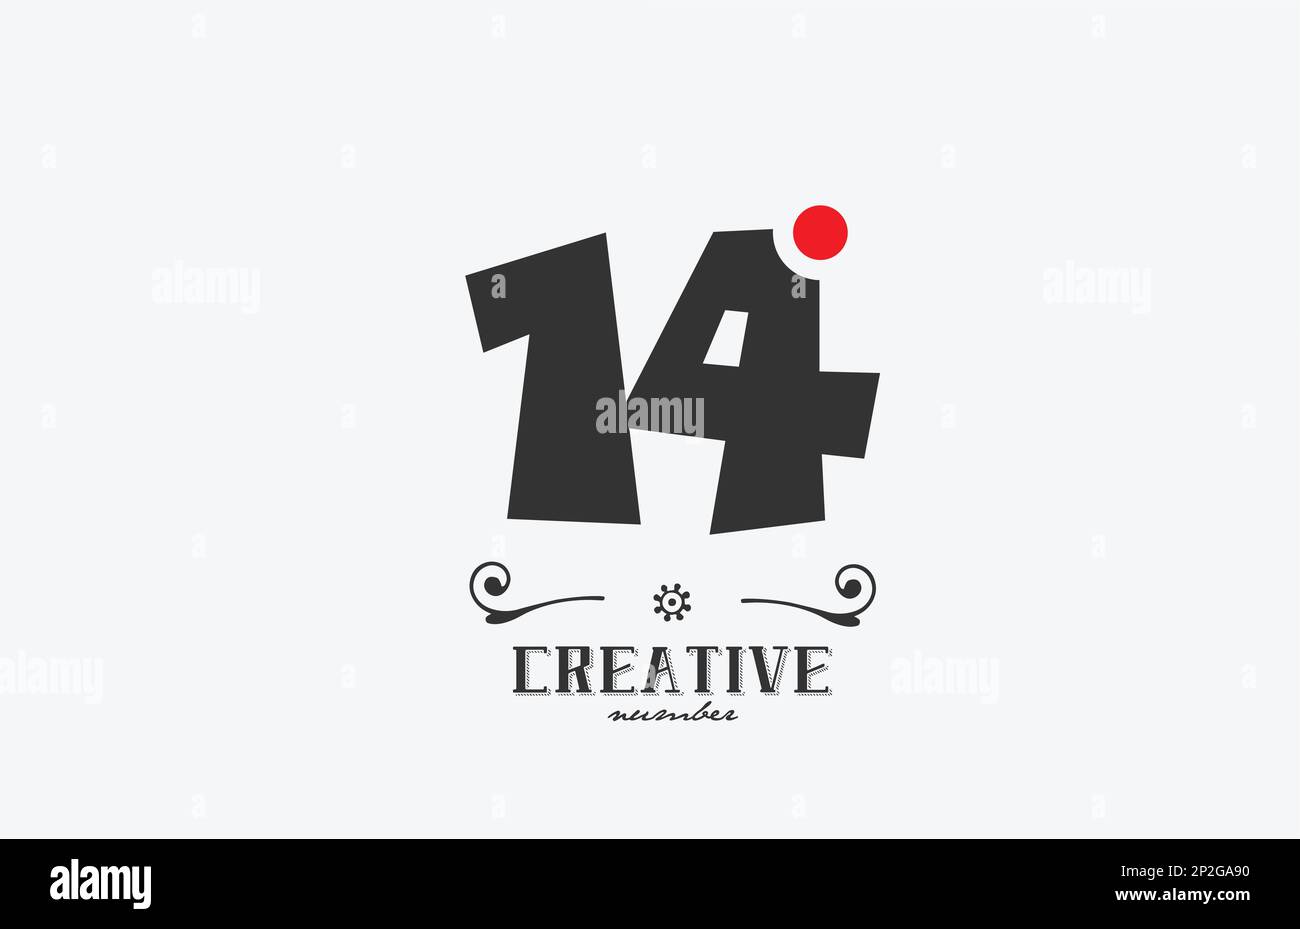 Graues Logo mit 14 Ziffern und rotem Punkt. Kreative Vorlage für Unternehmen und Unternehmen Stock Vektor